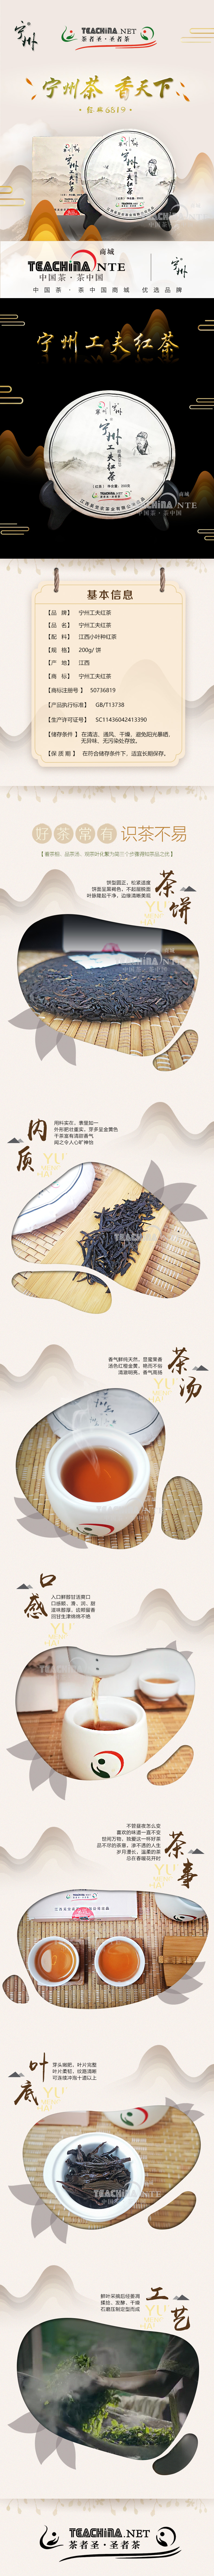 宁州功夫红茶(图1)